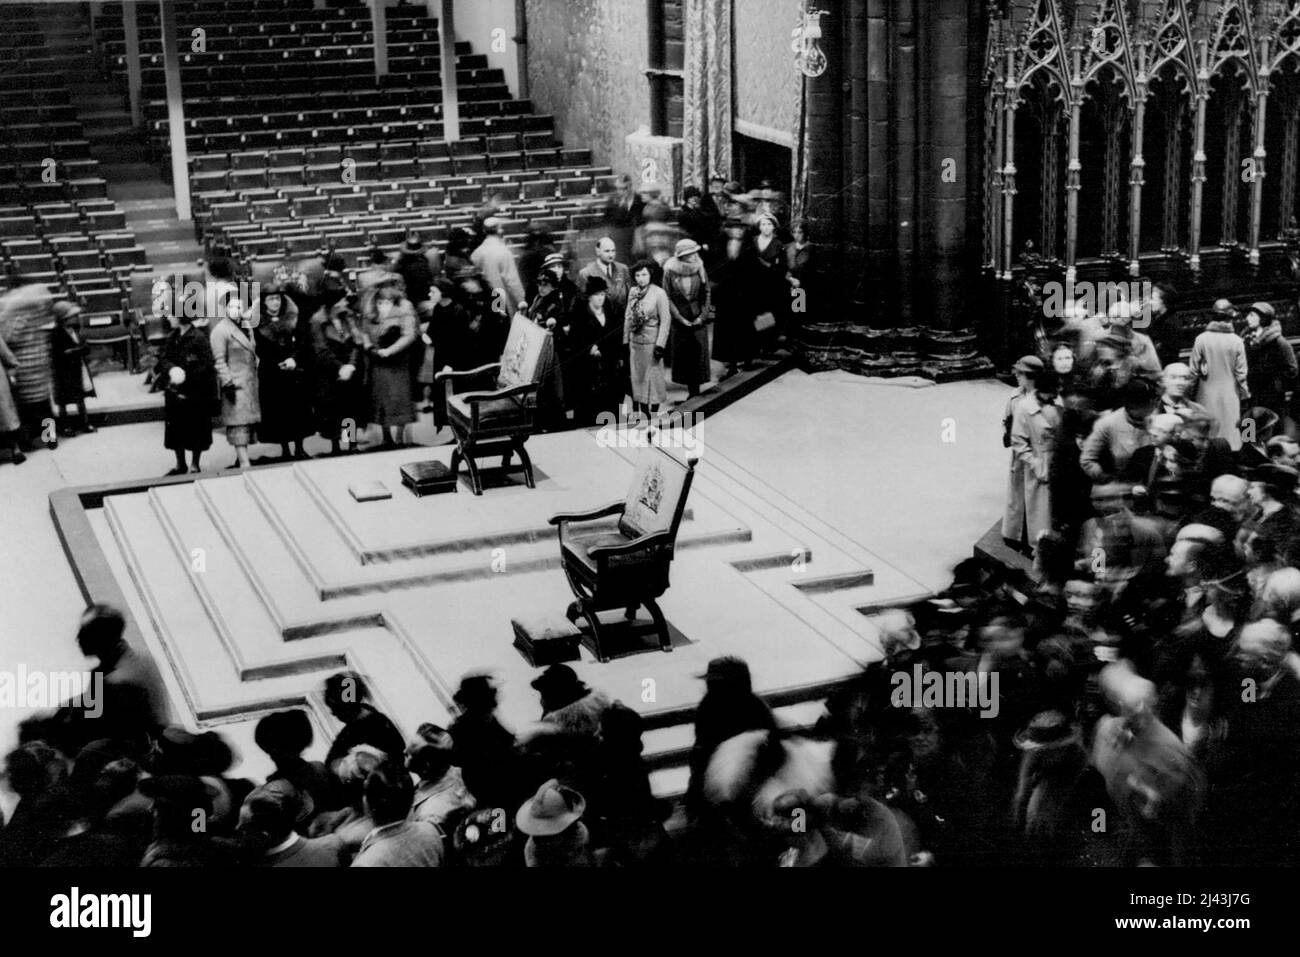 La folla vede l'Abbazia di Westminster in Full Coronation Splendor -- migliaia di persone che hanno aspettato di vedere l'interno dell'Abbazia di Westminster come era durante l'incoronazione del Re e della Regina ora avranno questo privilegio. Nulla è stato rimosso, tranne la regalia reale, e la gente può ora ispezionare l'Abbazia in tutto lo splendore della sua panoply incoronazione. Giugno 08, 1937. (Foto di stampa associata). Foto Stock